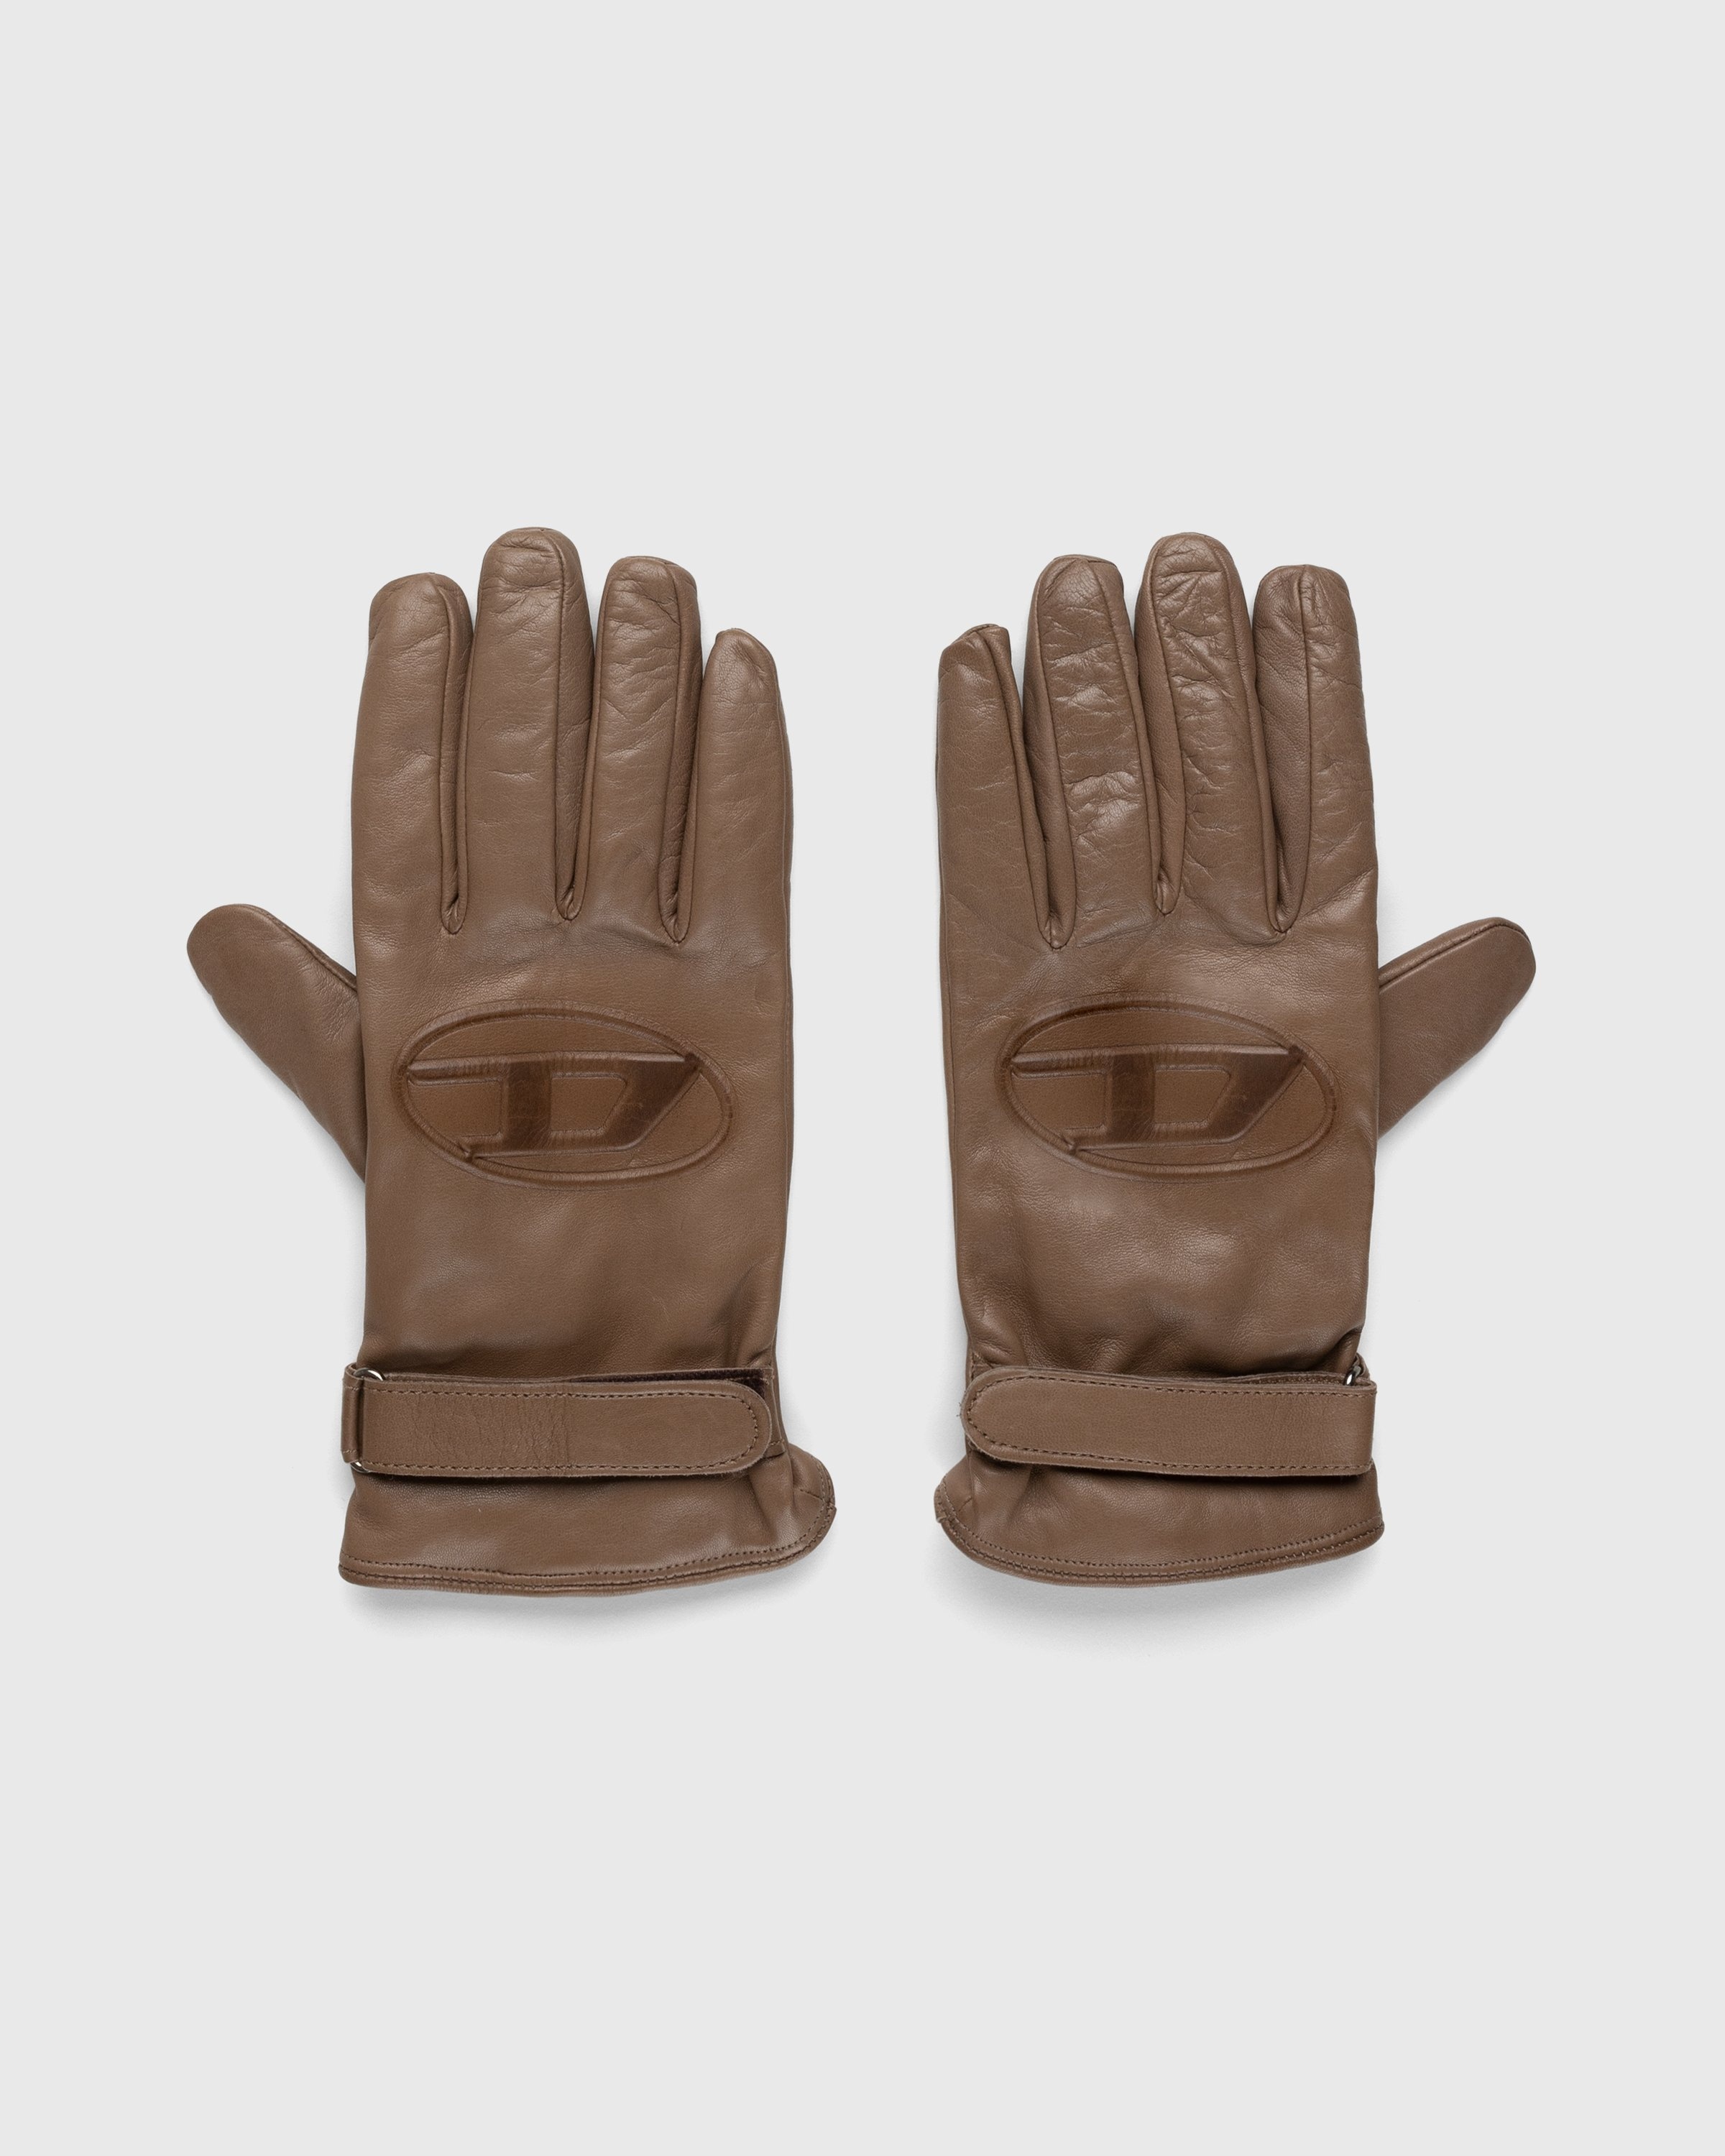 Diesel – Dermont Gloves Beige - 5-Finger - Beige - Image 1